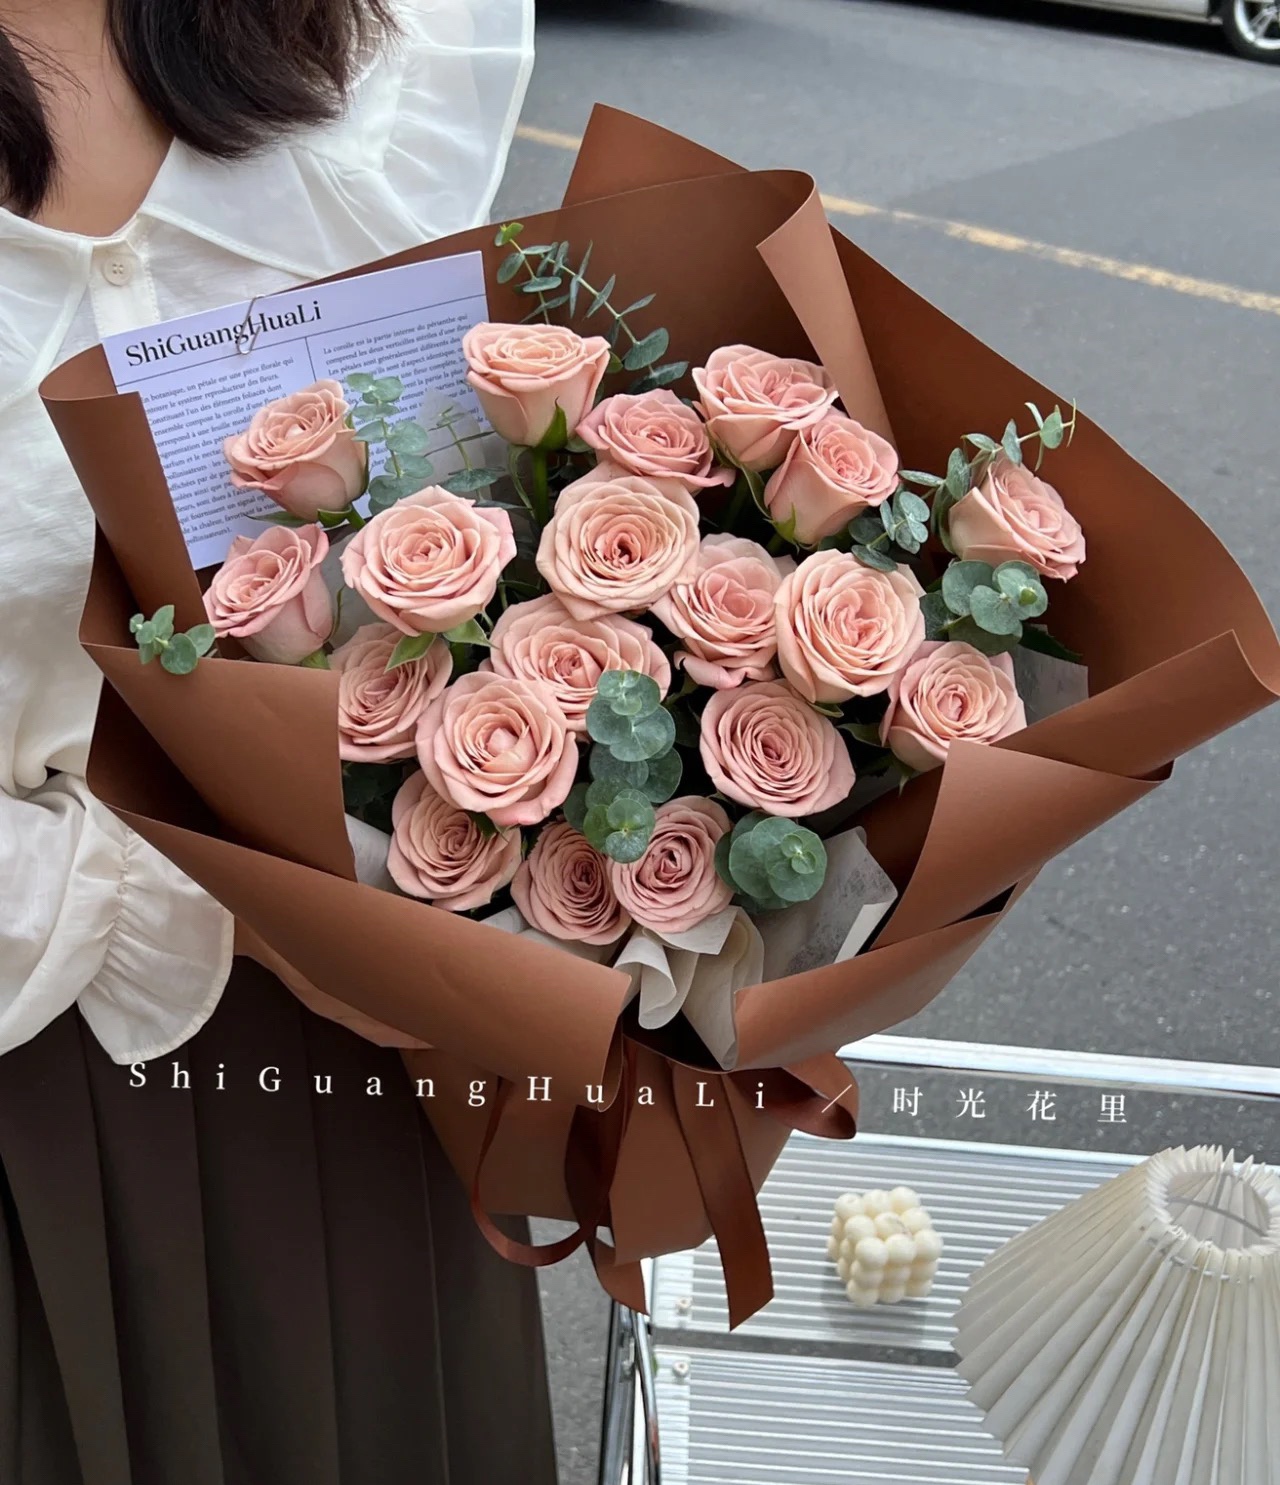 19支卡布奇诺玫瑰复古花束鲜花速递节日送花只送广西柳州市区包邮